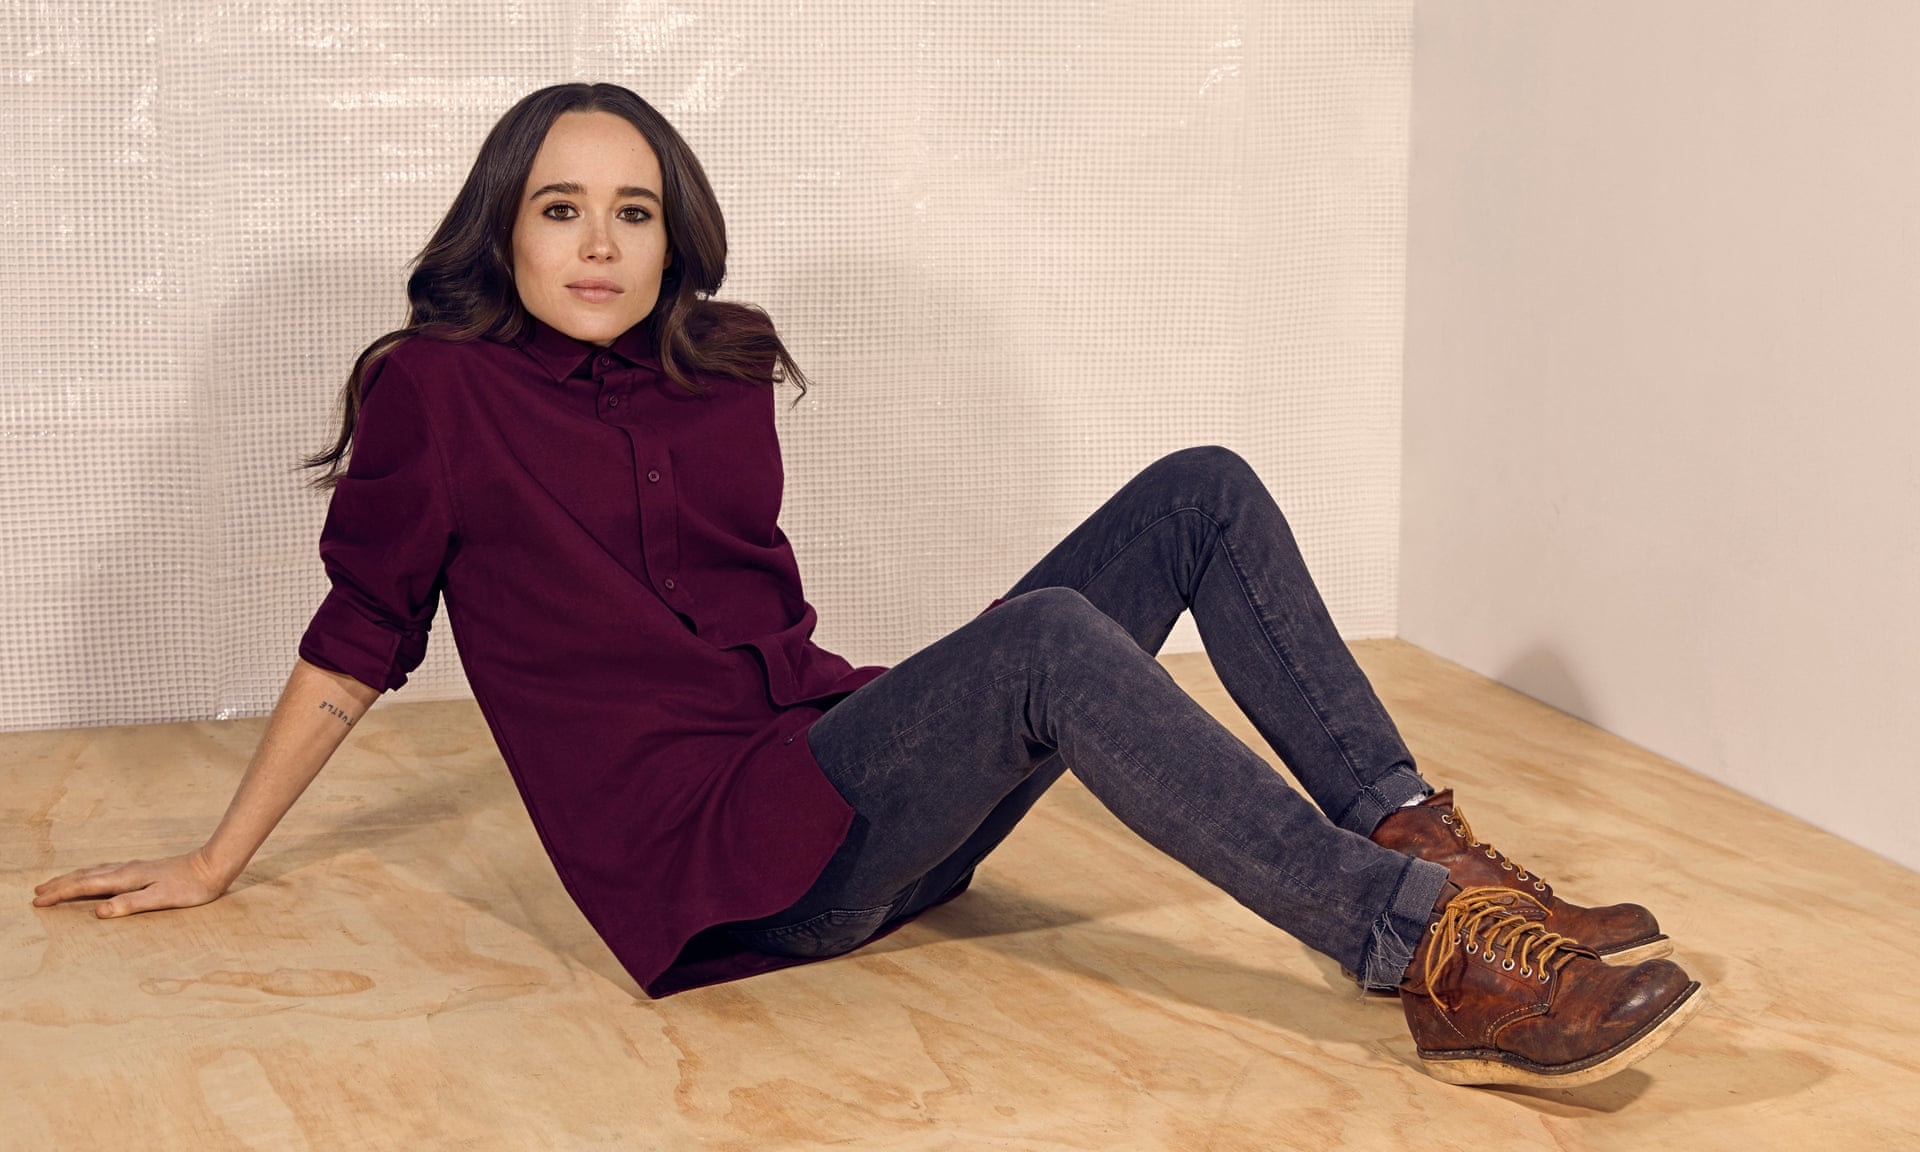 Ellen Page 2019 Wallpaper, HD Celebrities 4K Wallpapers, Images, Photos ...